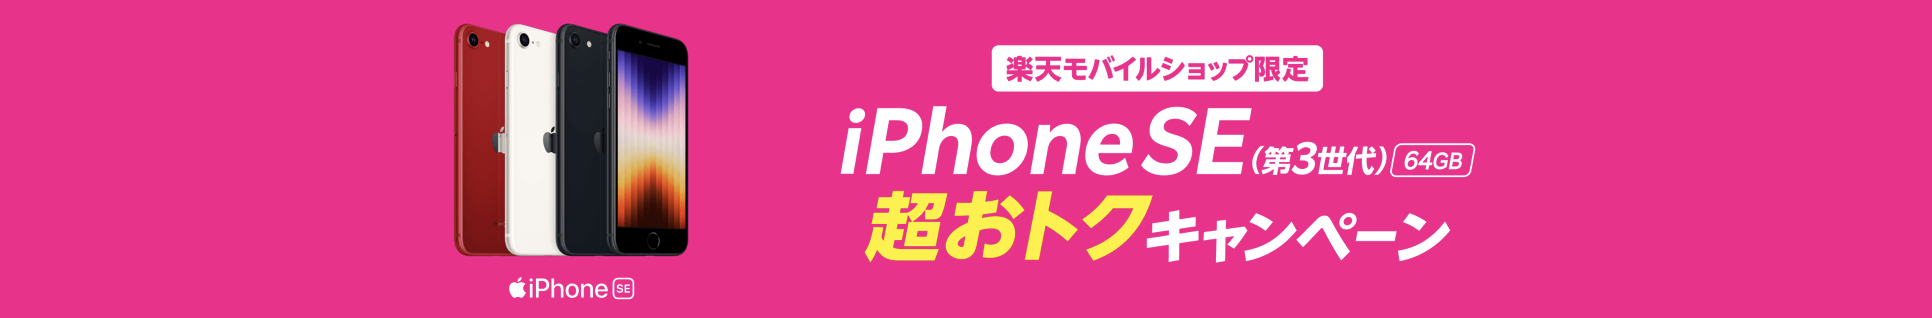 楽天モバイルiPhone SE3 1円